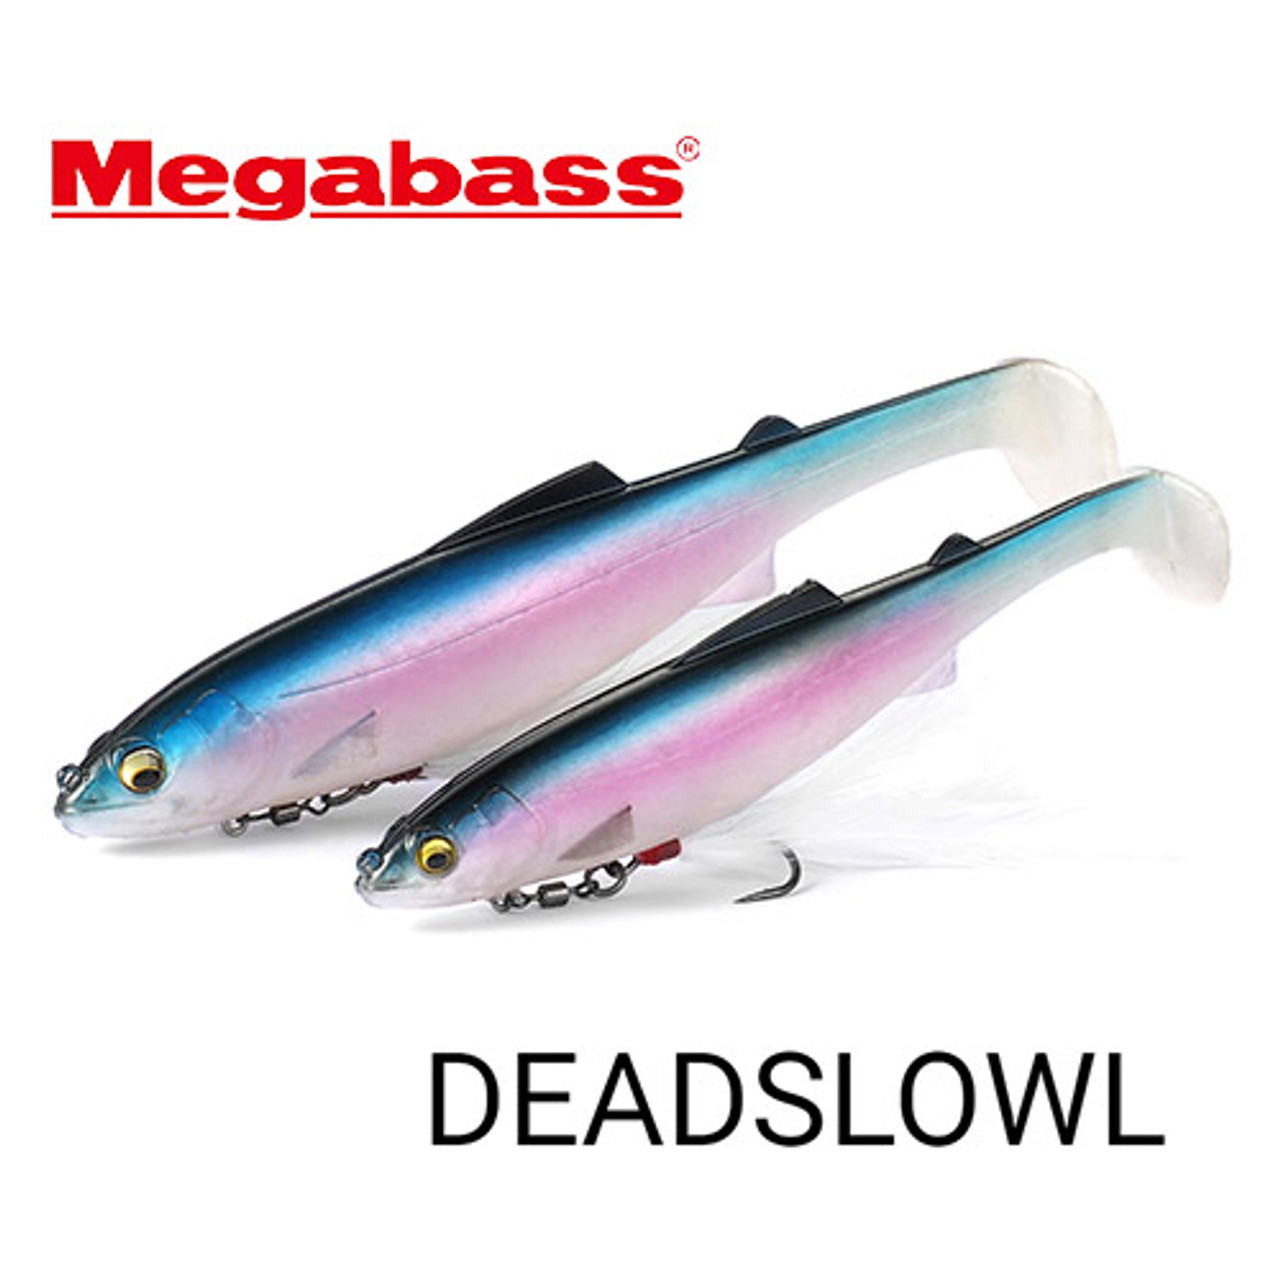 Megabass DEADSLOWL 7 NEW